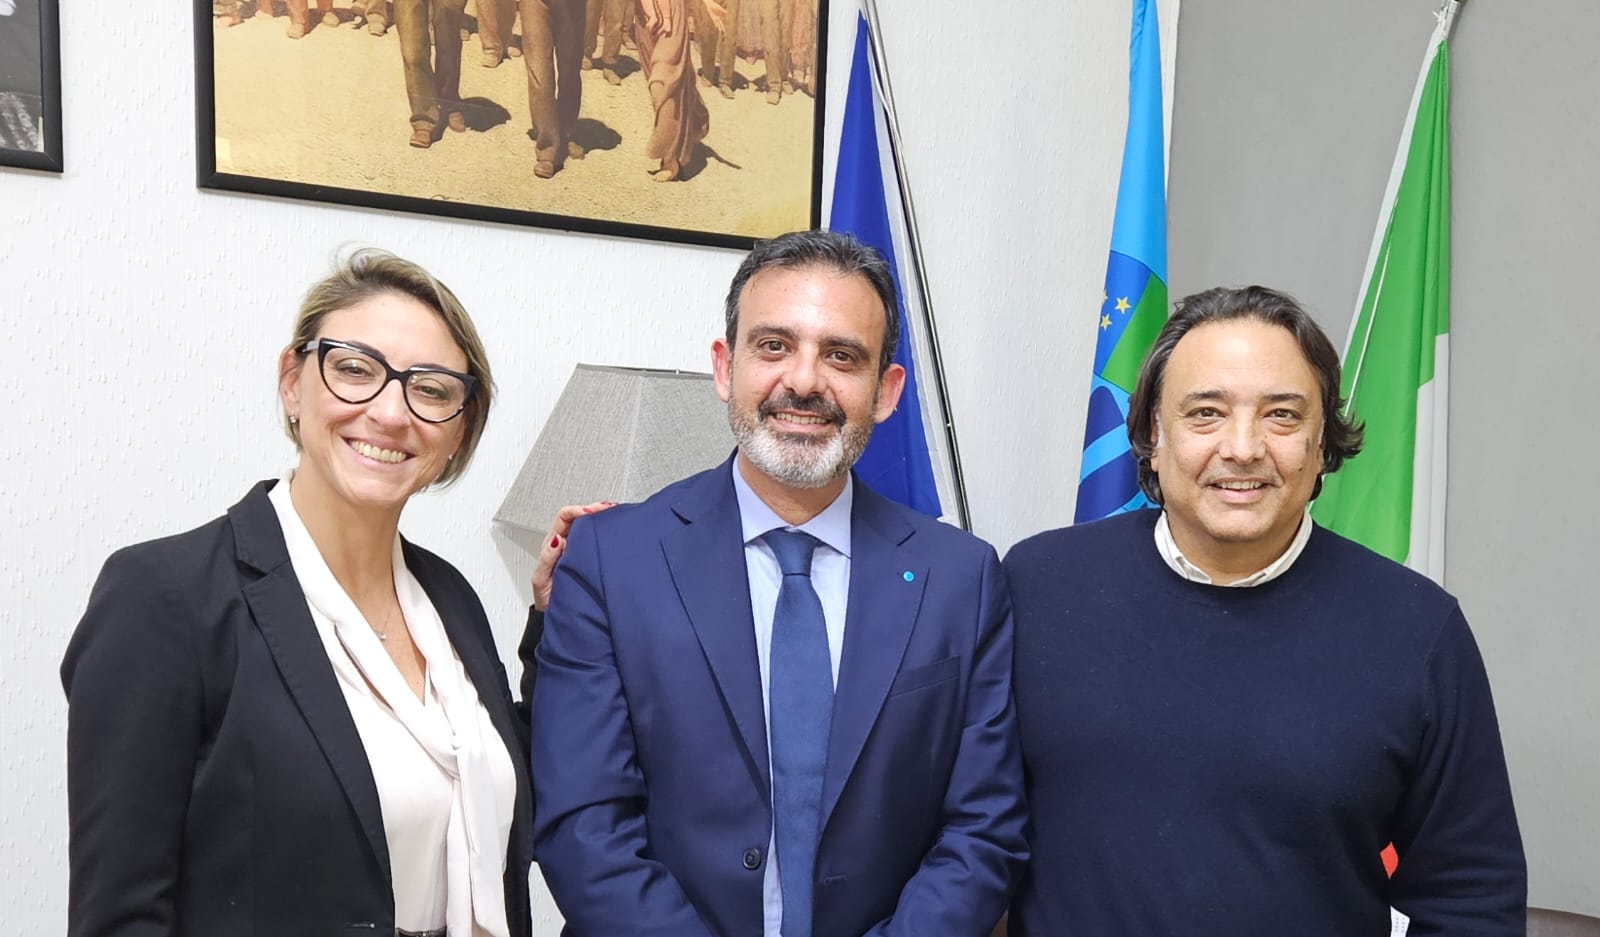 Uiltrasporti Messina, Di Mento eletto nuovo segretario generale